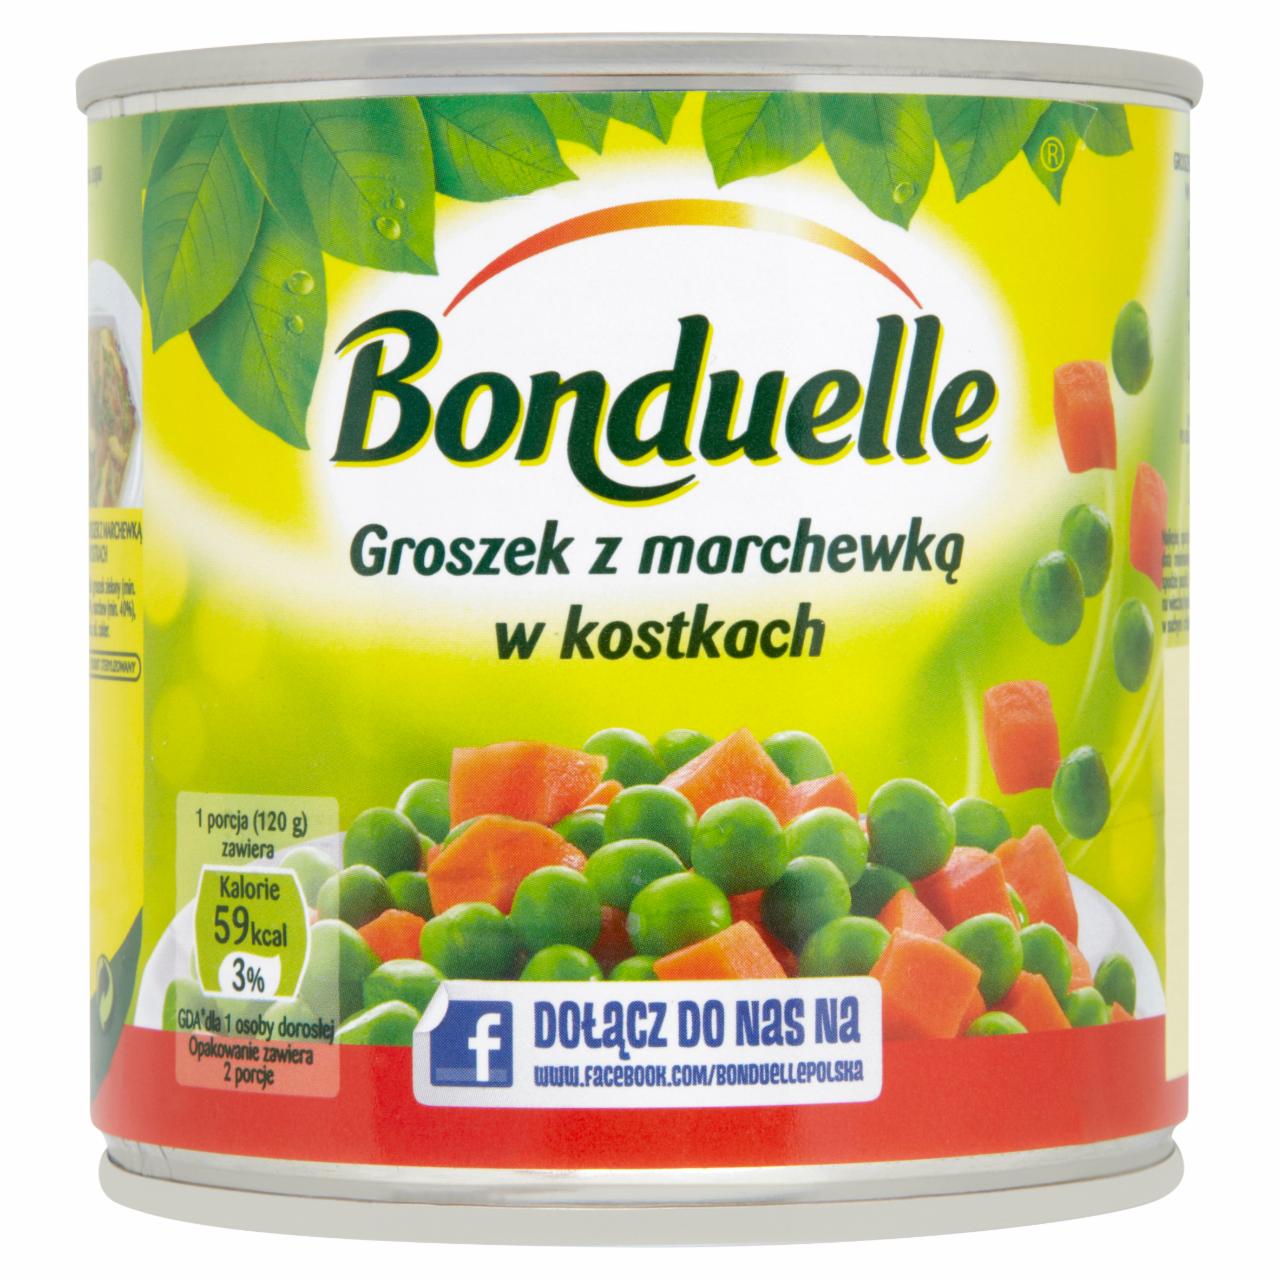 Zdjęcia - Bonduelle Groszek z marchewką w kostkach 400 g